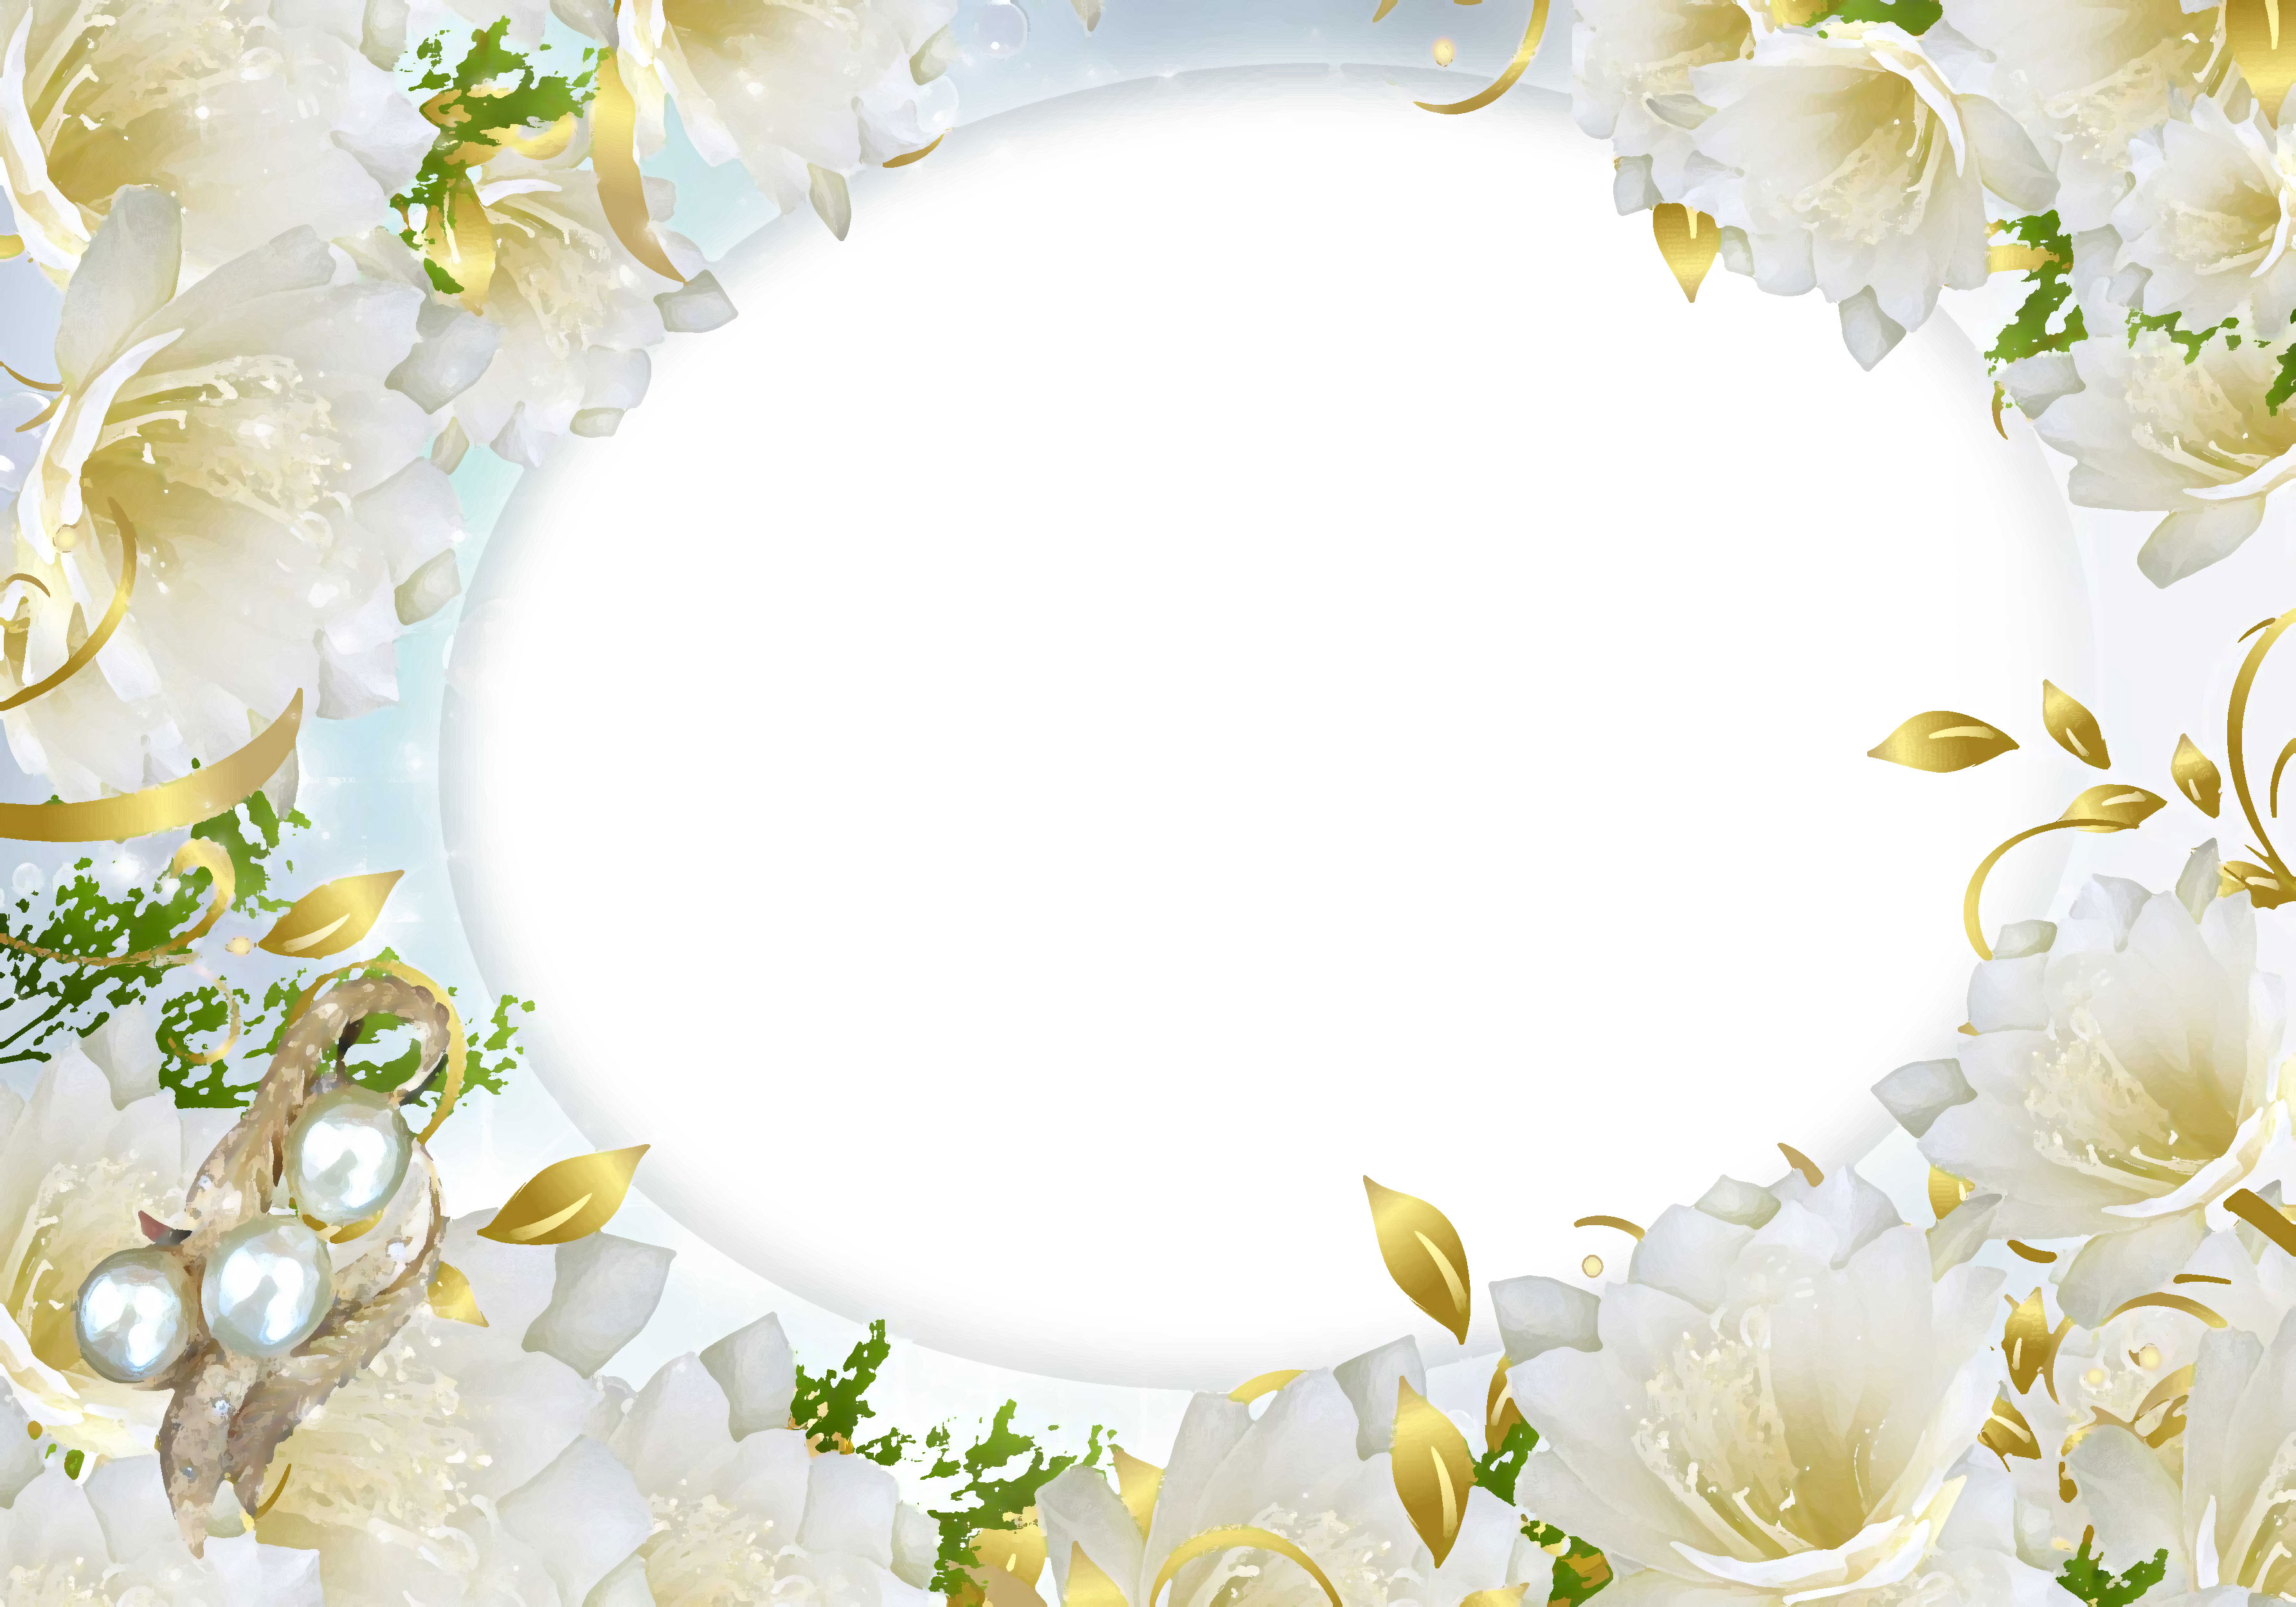 壁紙 背景イラスト 花のフレーム 外枠 No 096 白 金の葉 真珠